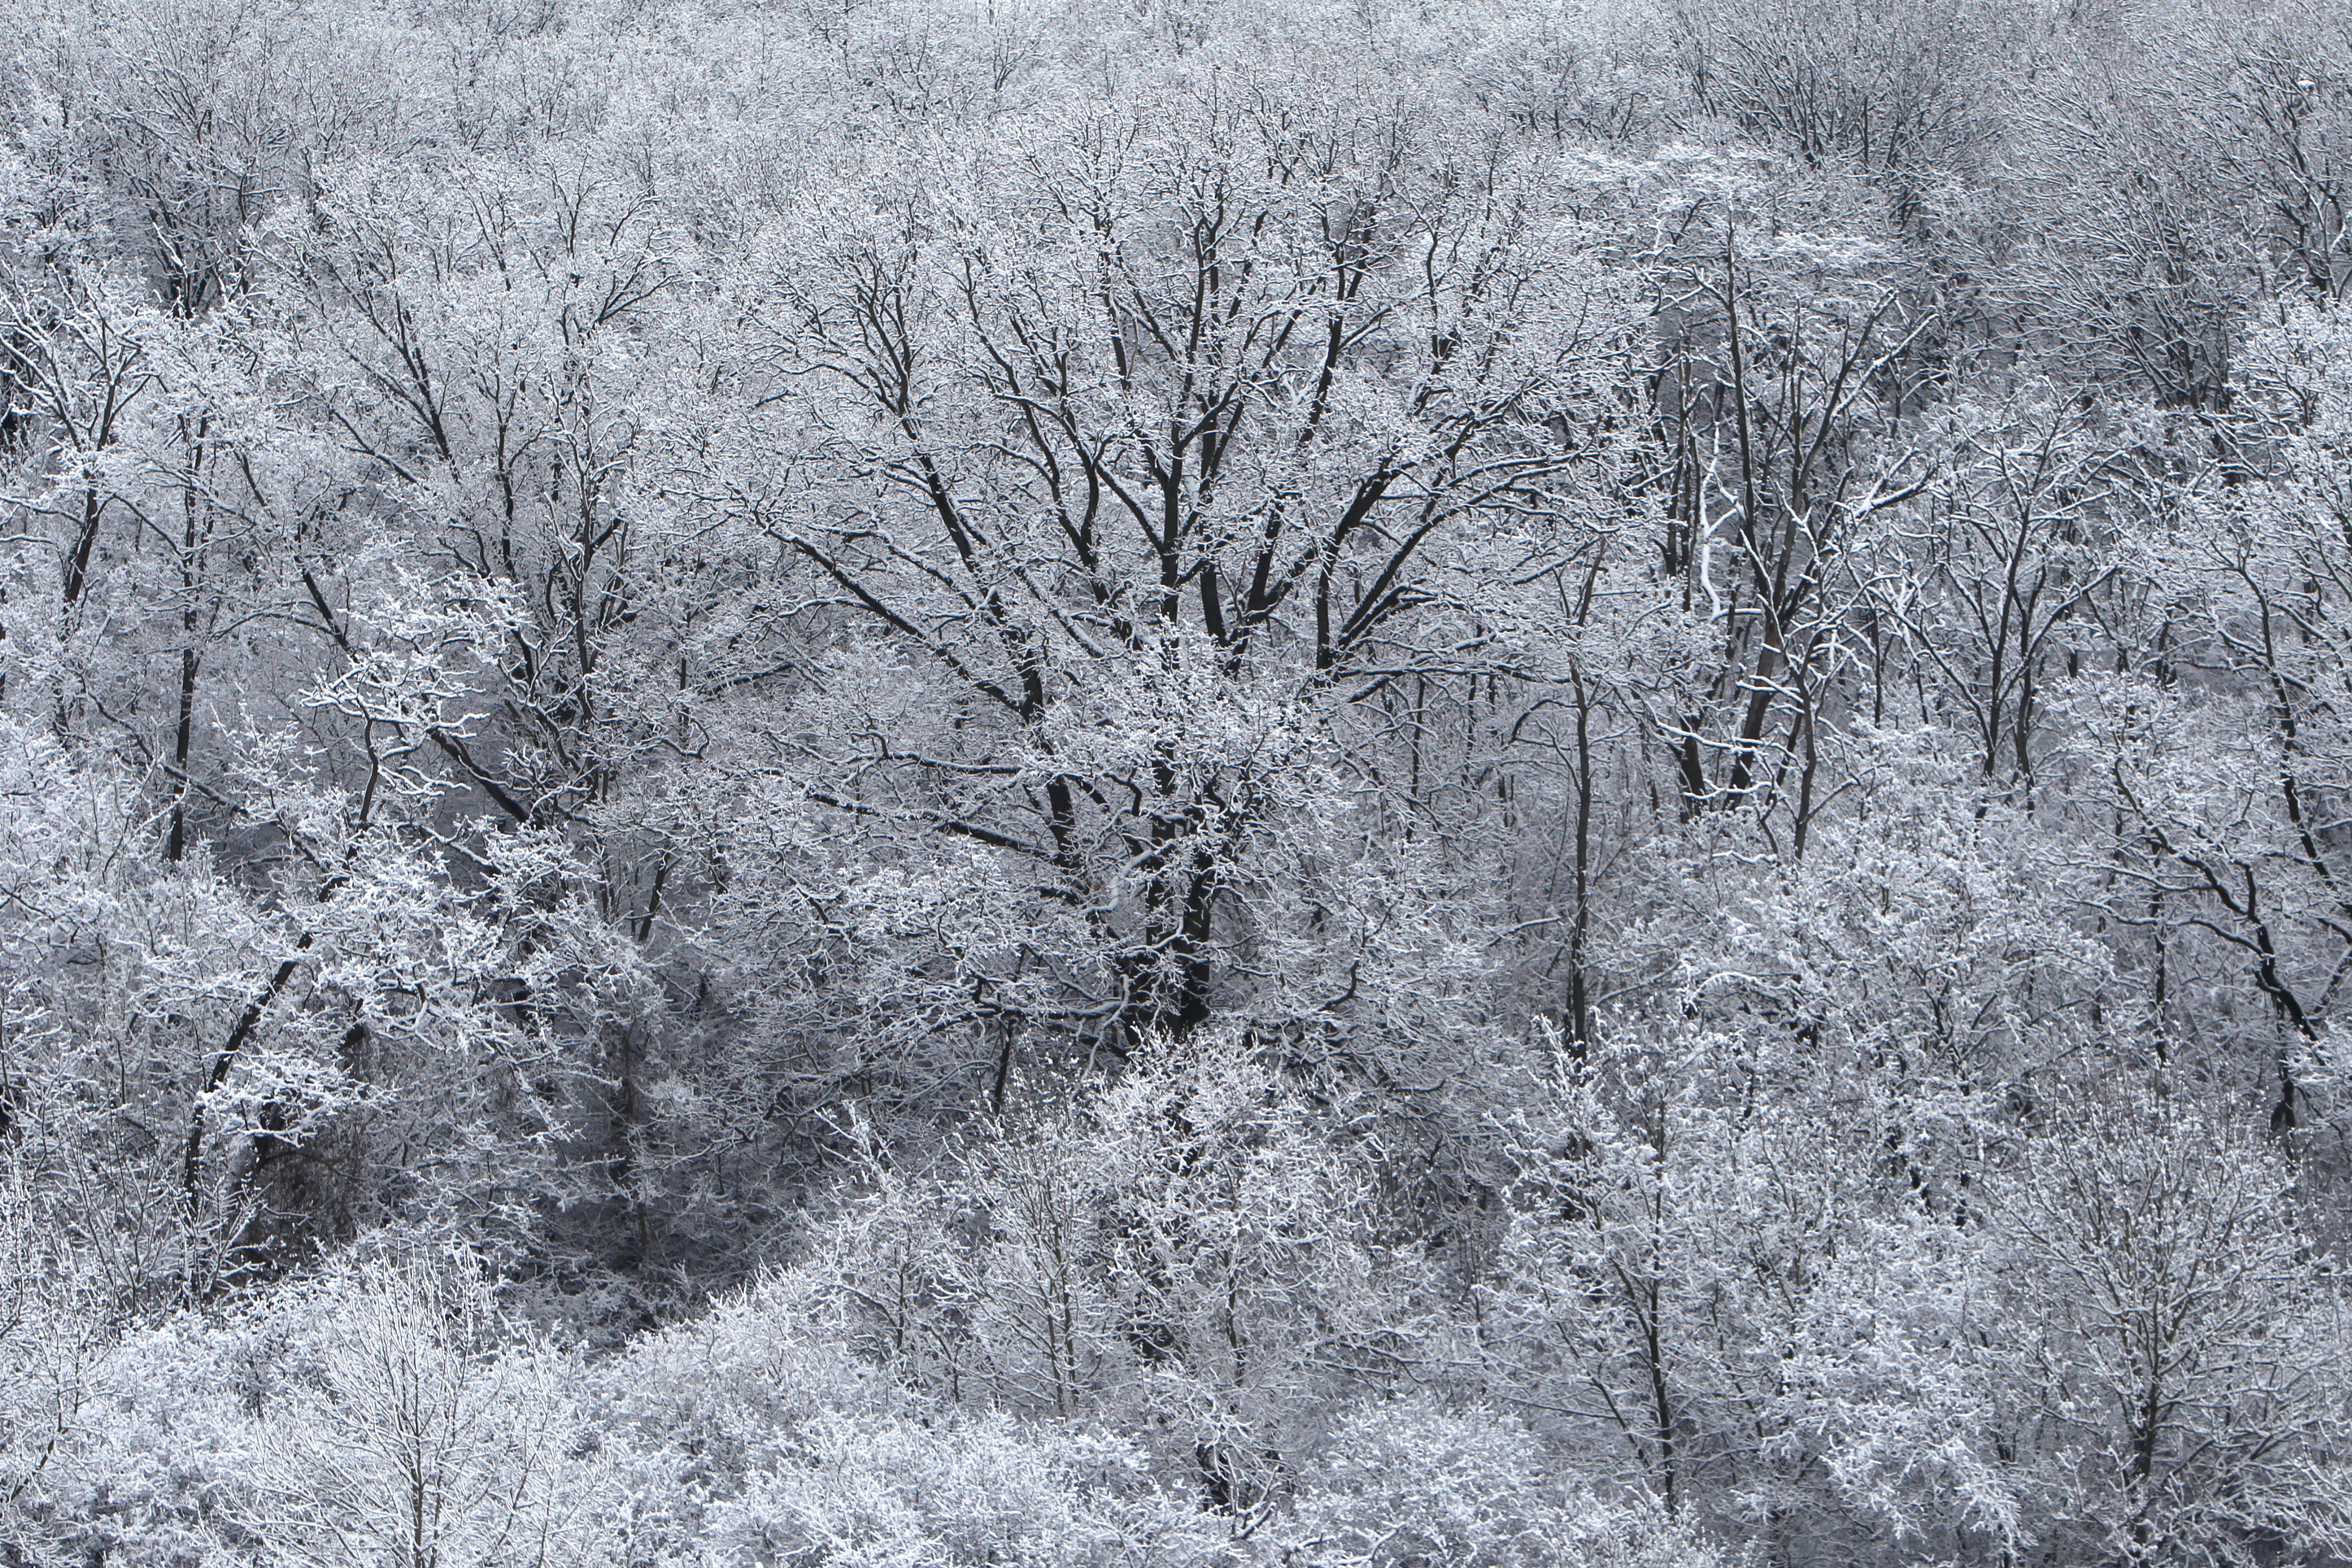 الثلوج تغطى الأشجار